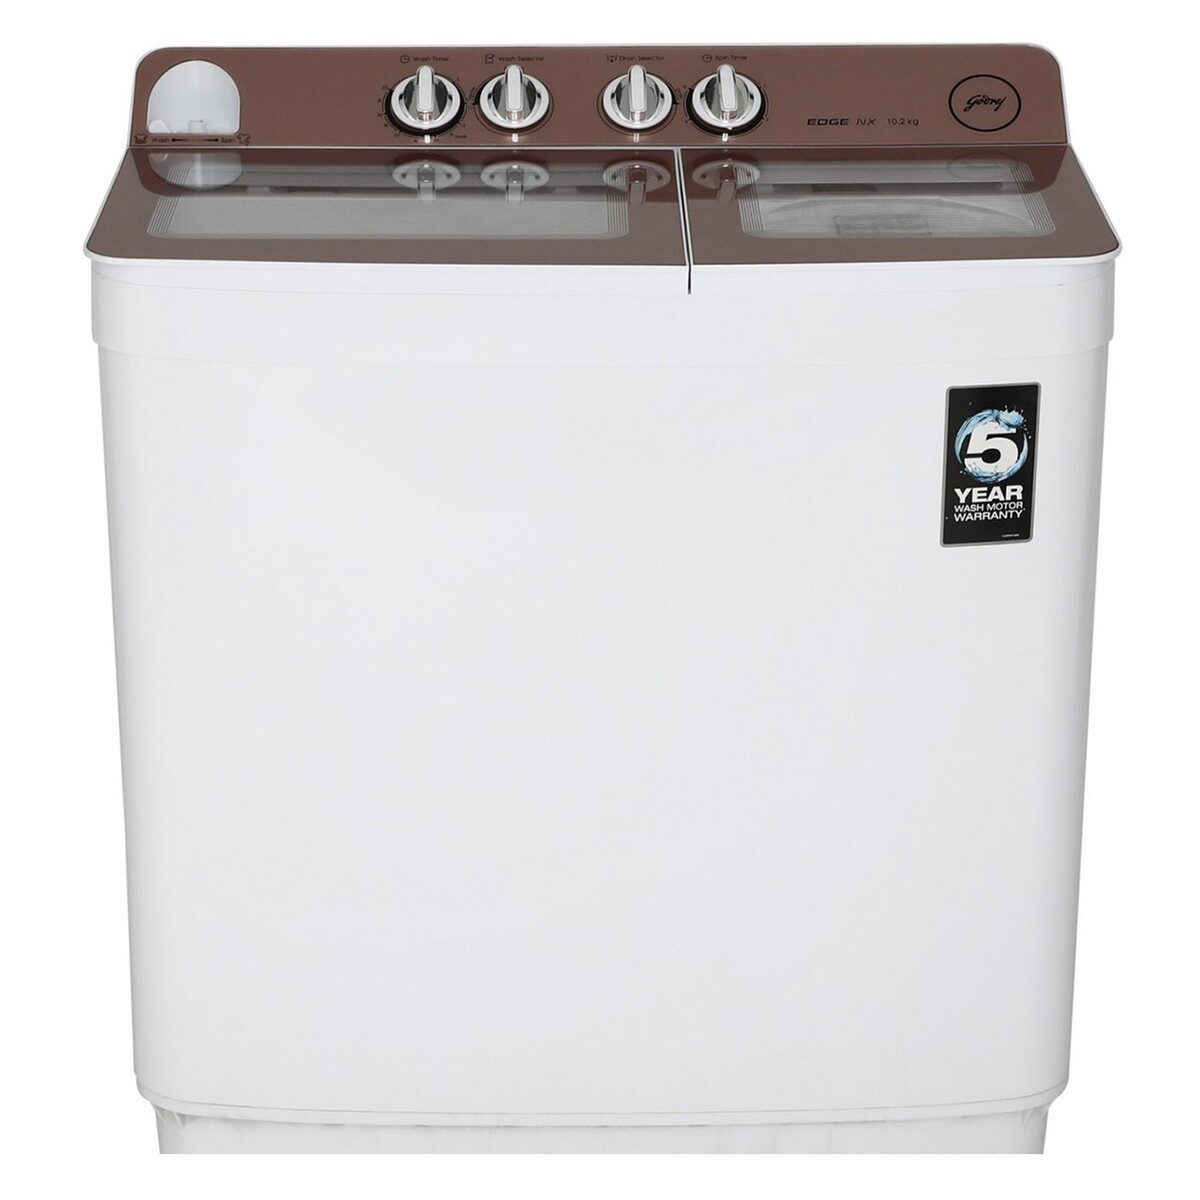 Godrej Semi Automatic  Washing Machine NX 1020 CPBR 10.2 kg